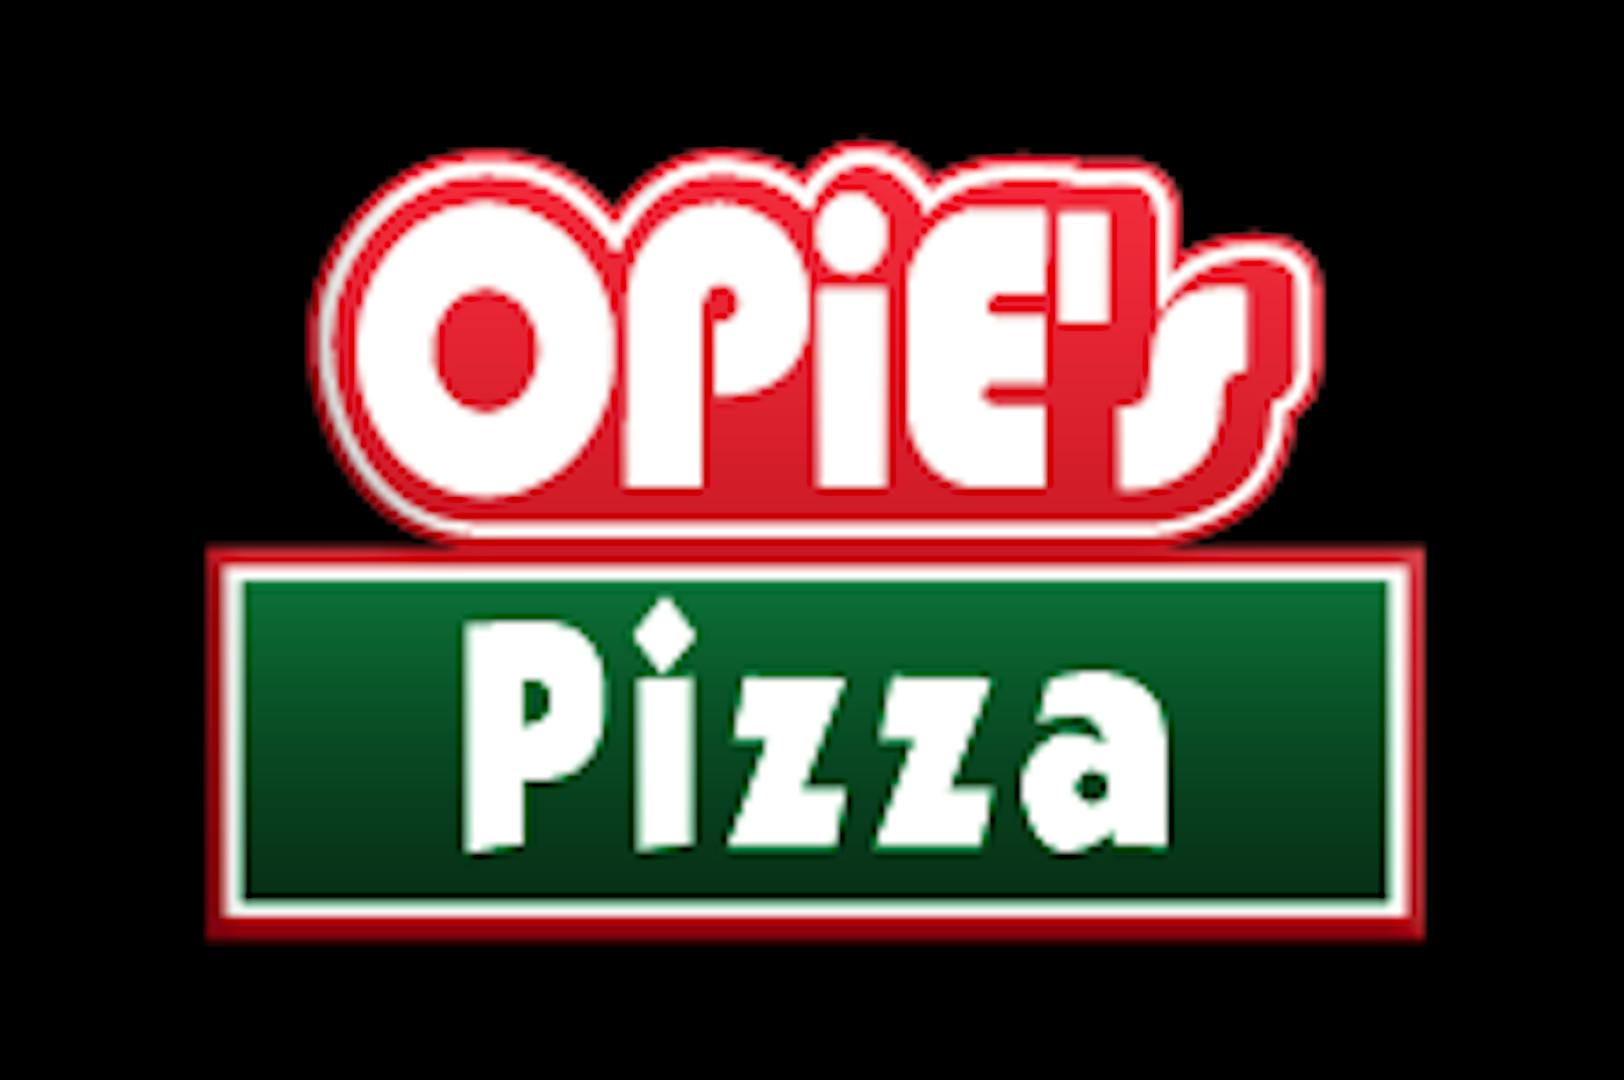 Opie's Pizza (Ft. Scott)